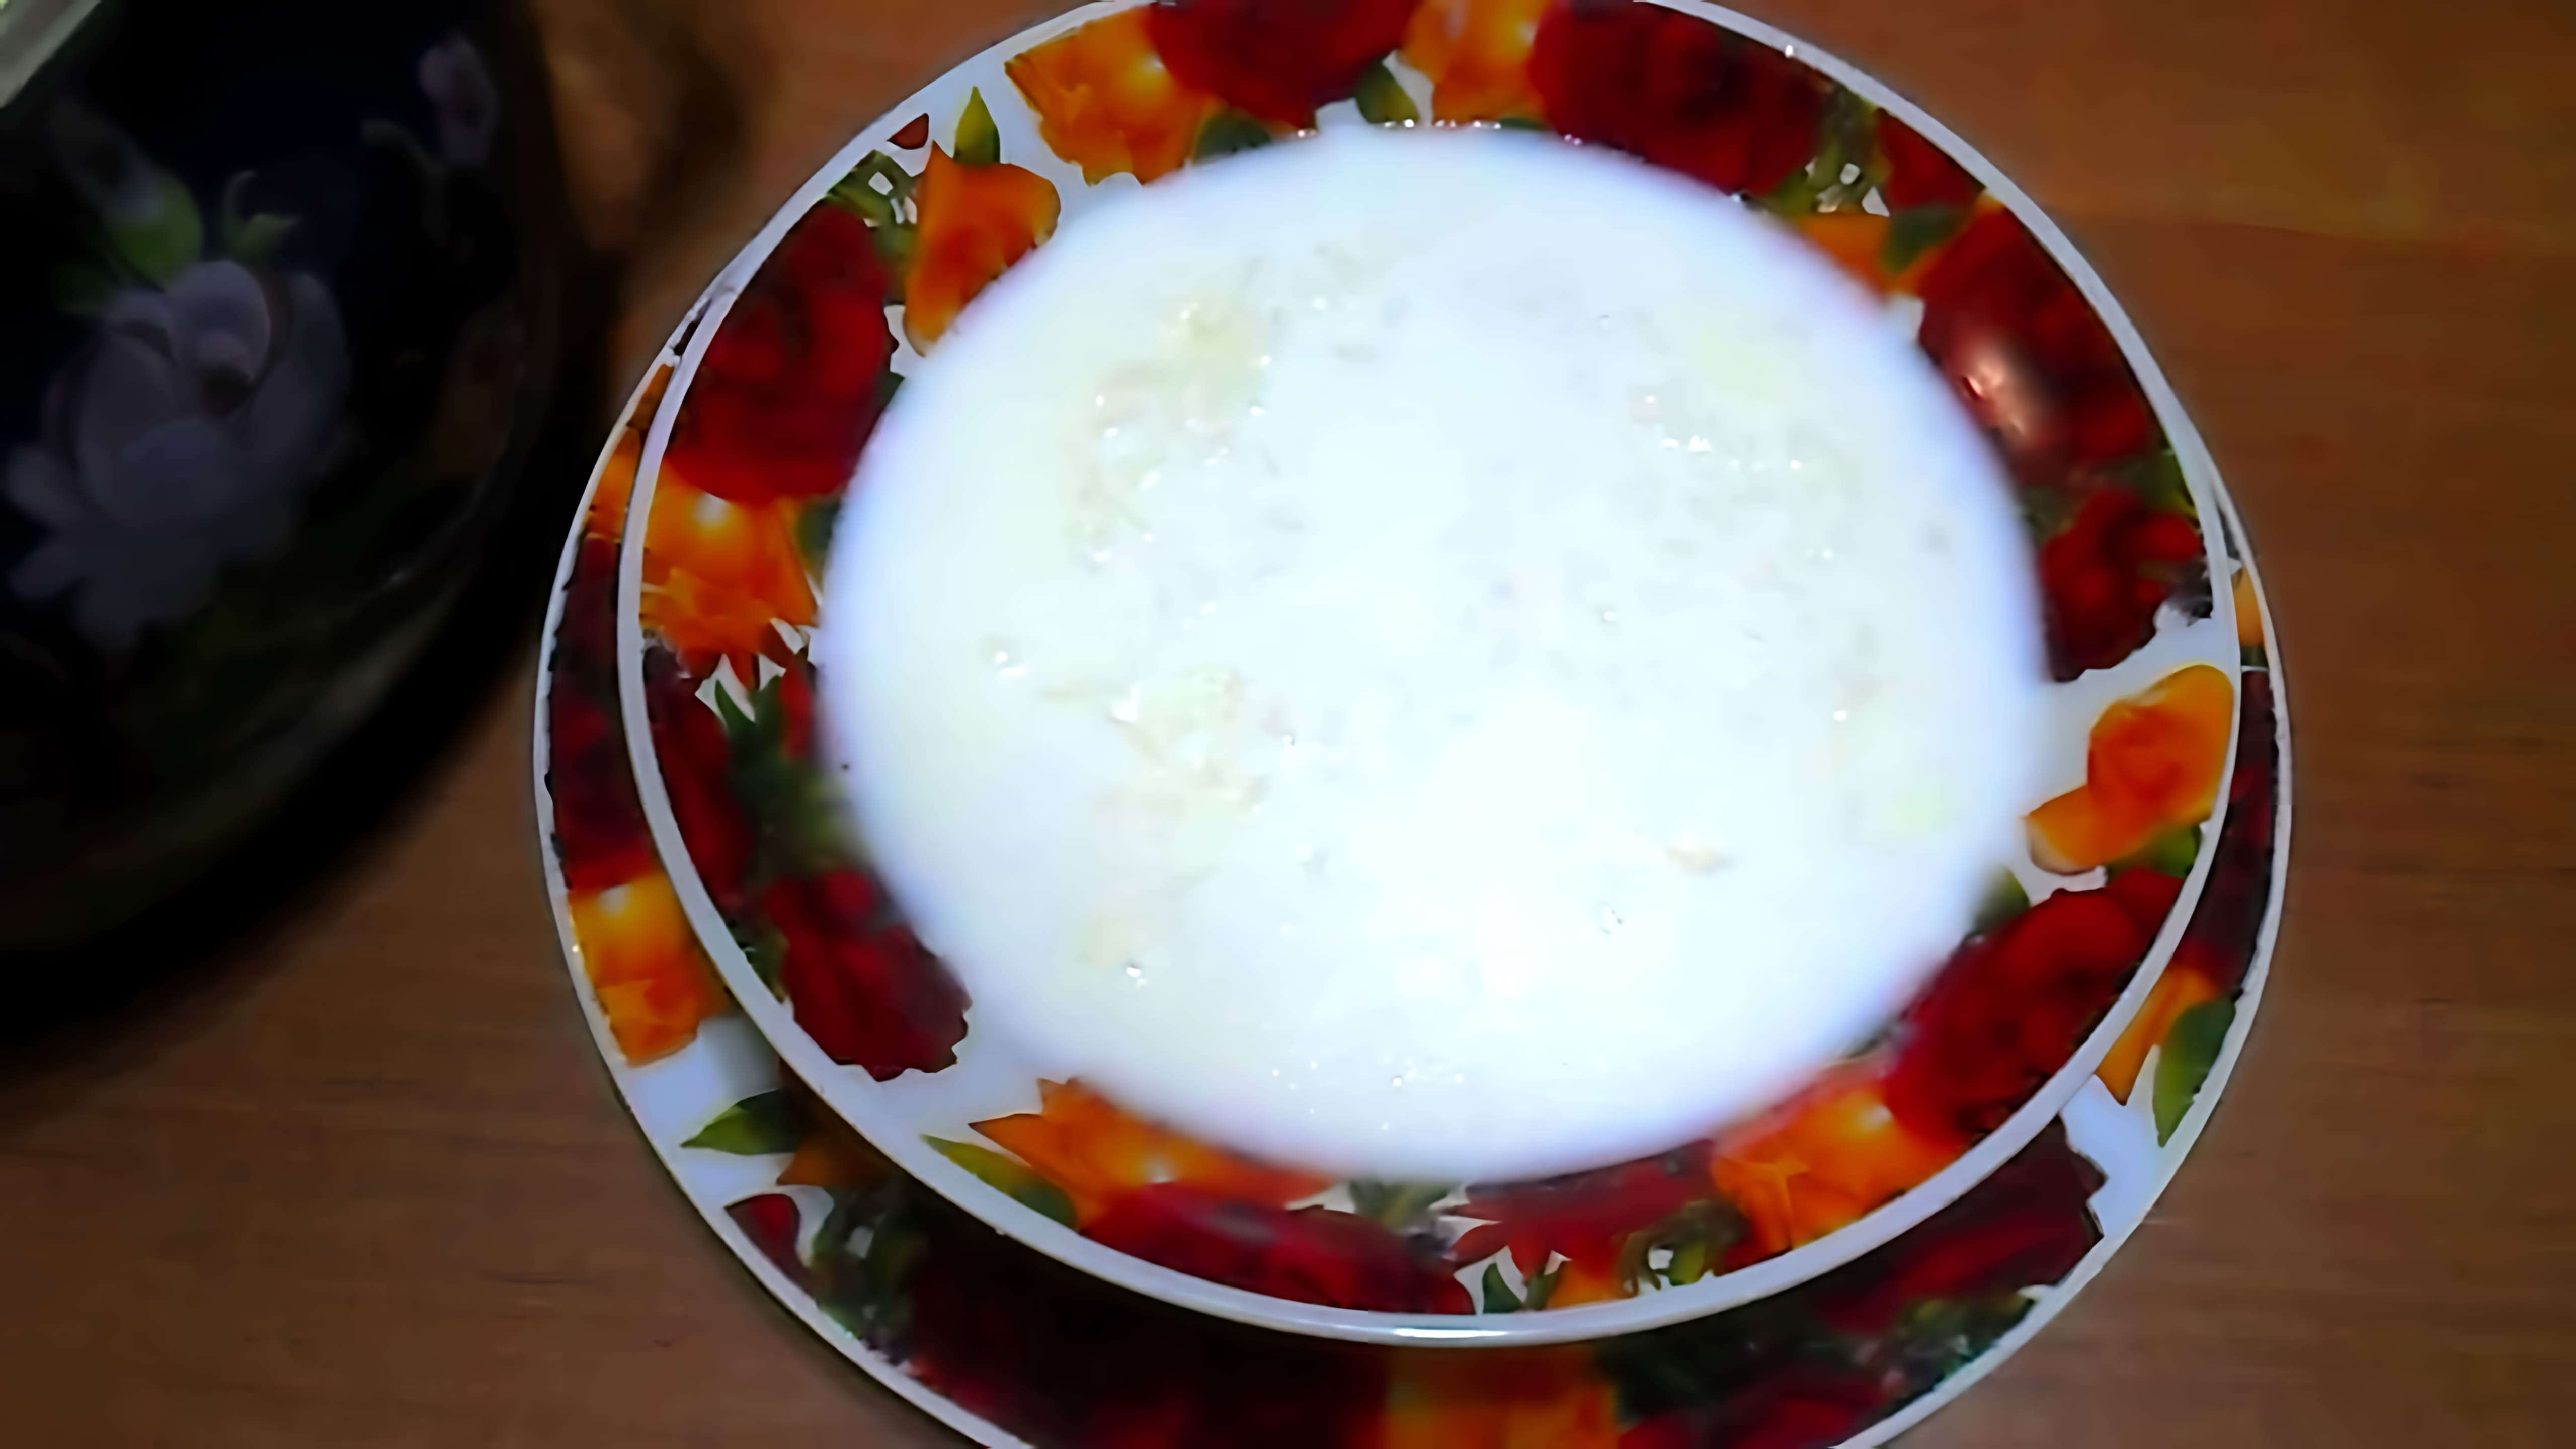 В этом видео демонстрируется процесс приготовления молочного рисового супа